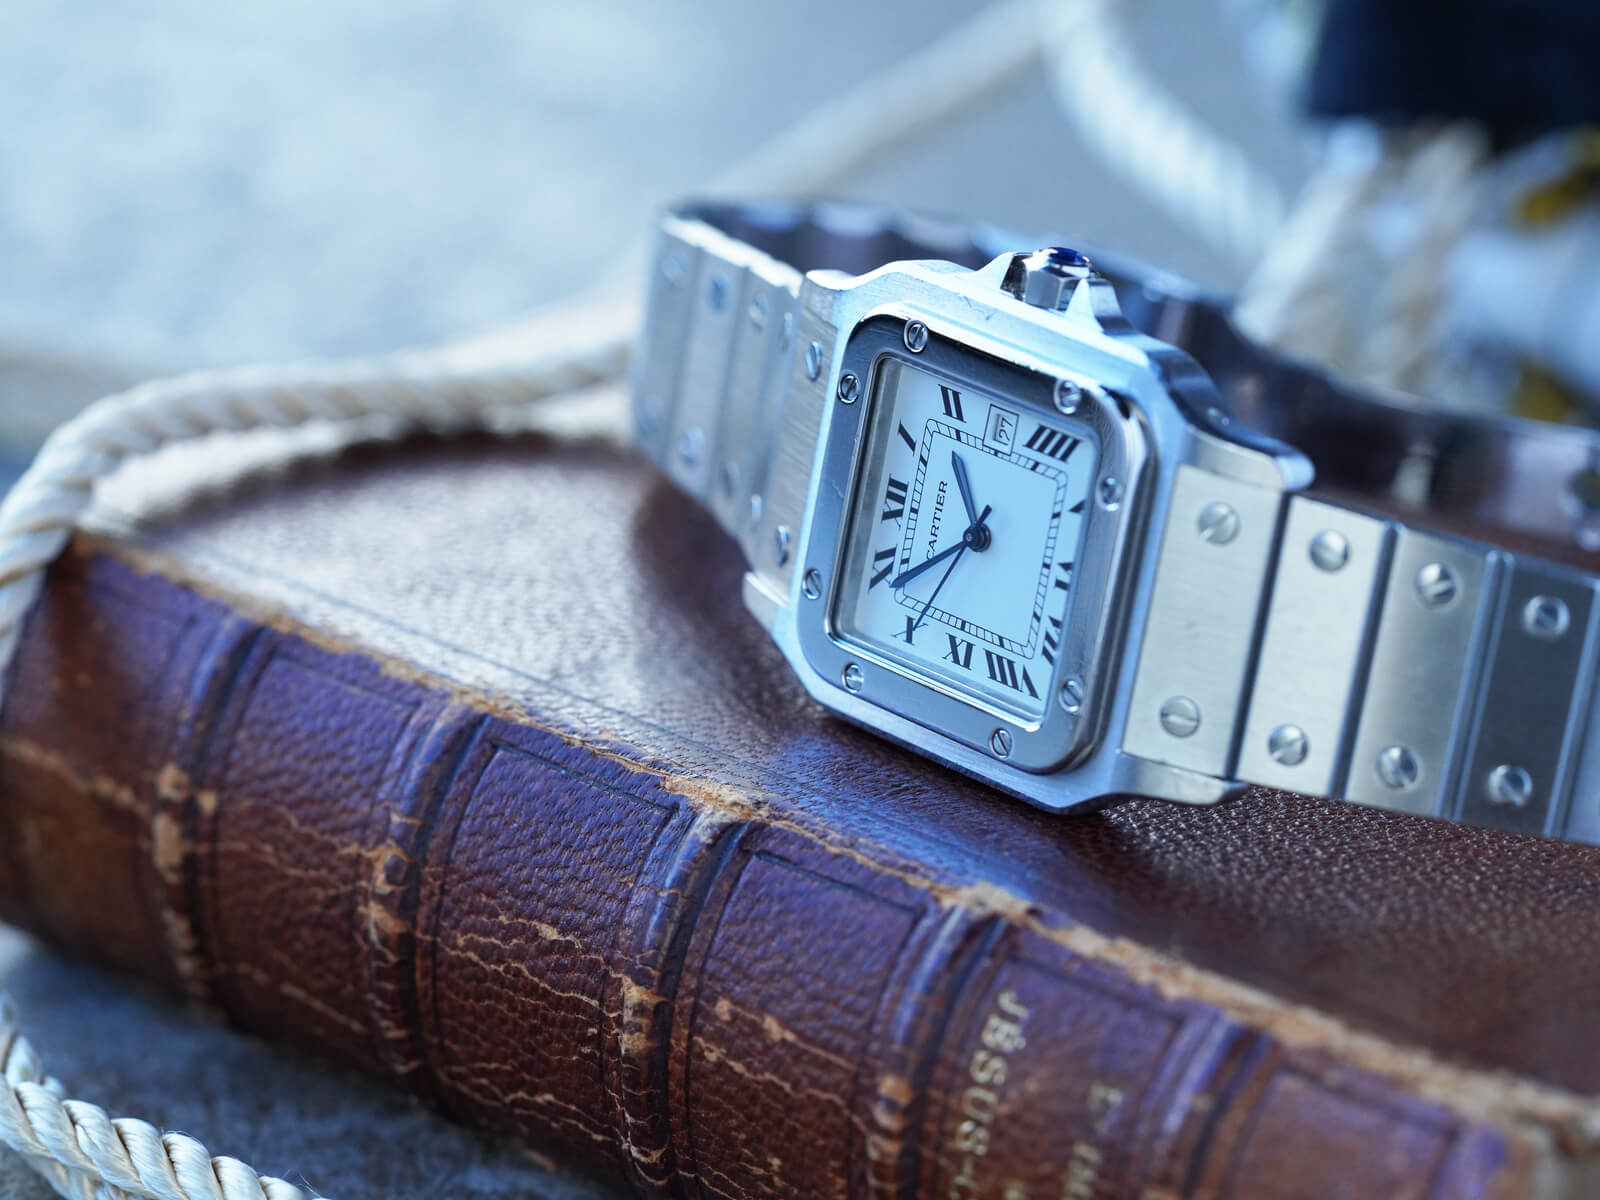 カルティエ Cartier サントスガルベLM 腕時計 ユニセックス